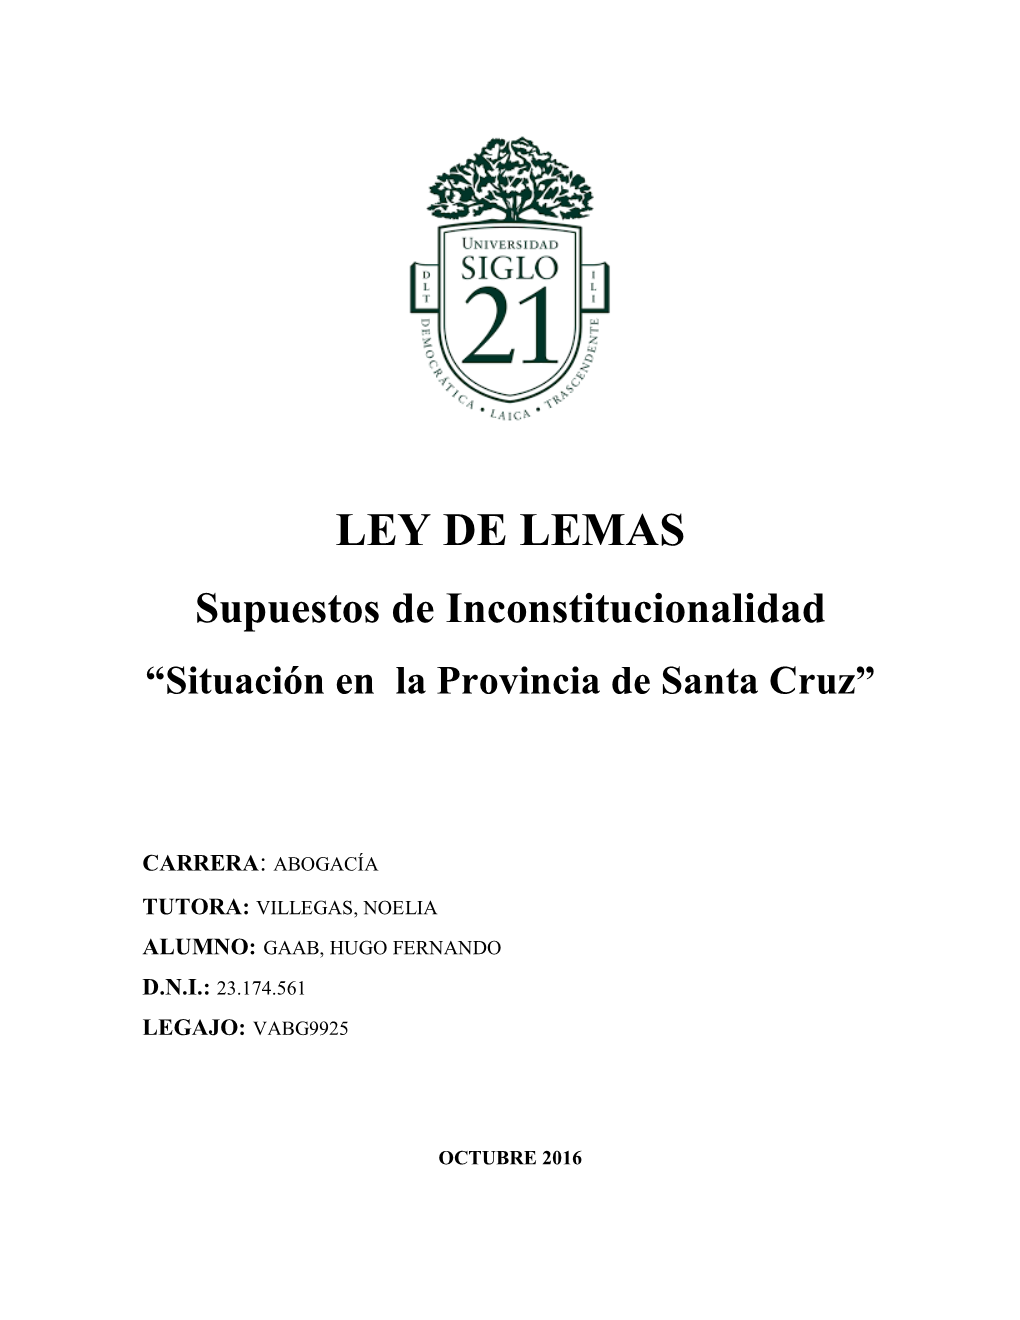 LEY DE LEMAS Supuestos De Inconstitucionalidad “Situación En La Provincia De Santa Cruz”